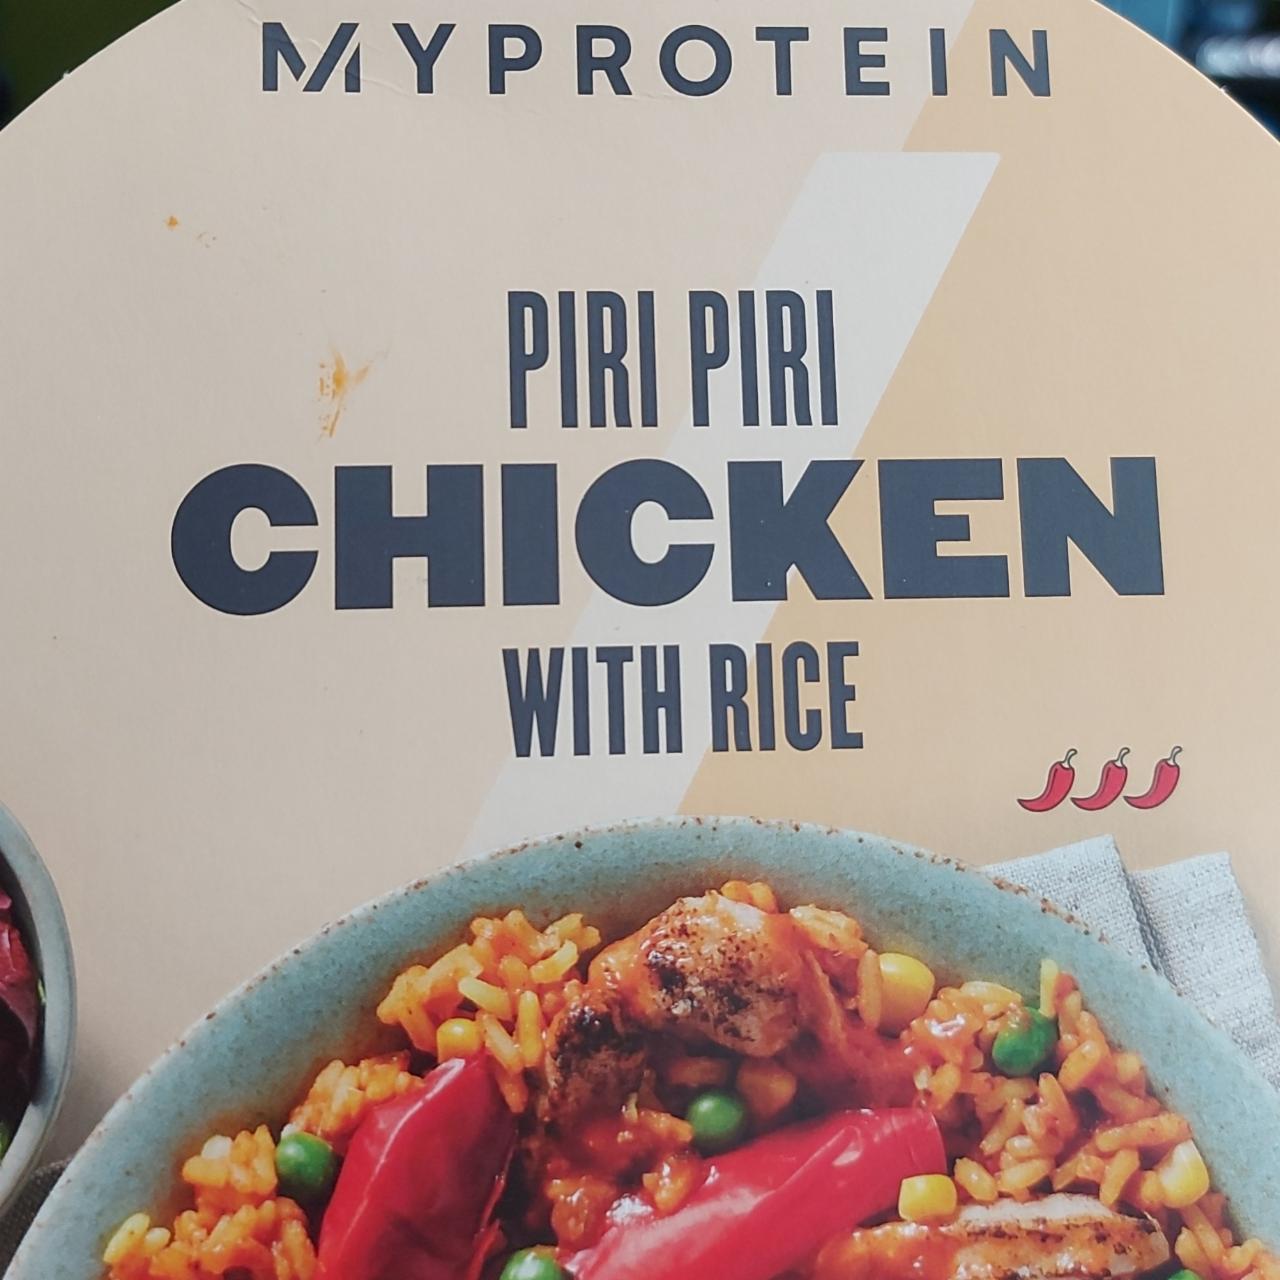 Fotografie - Piri piri chicken with rice Myprotein